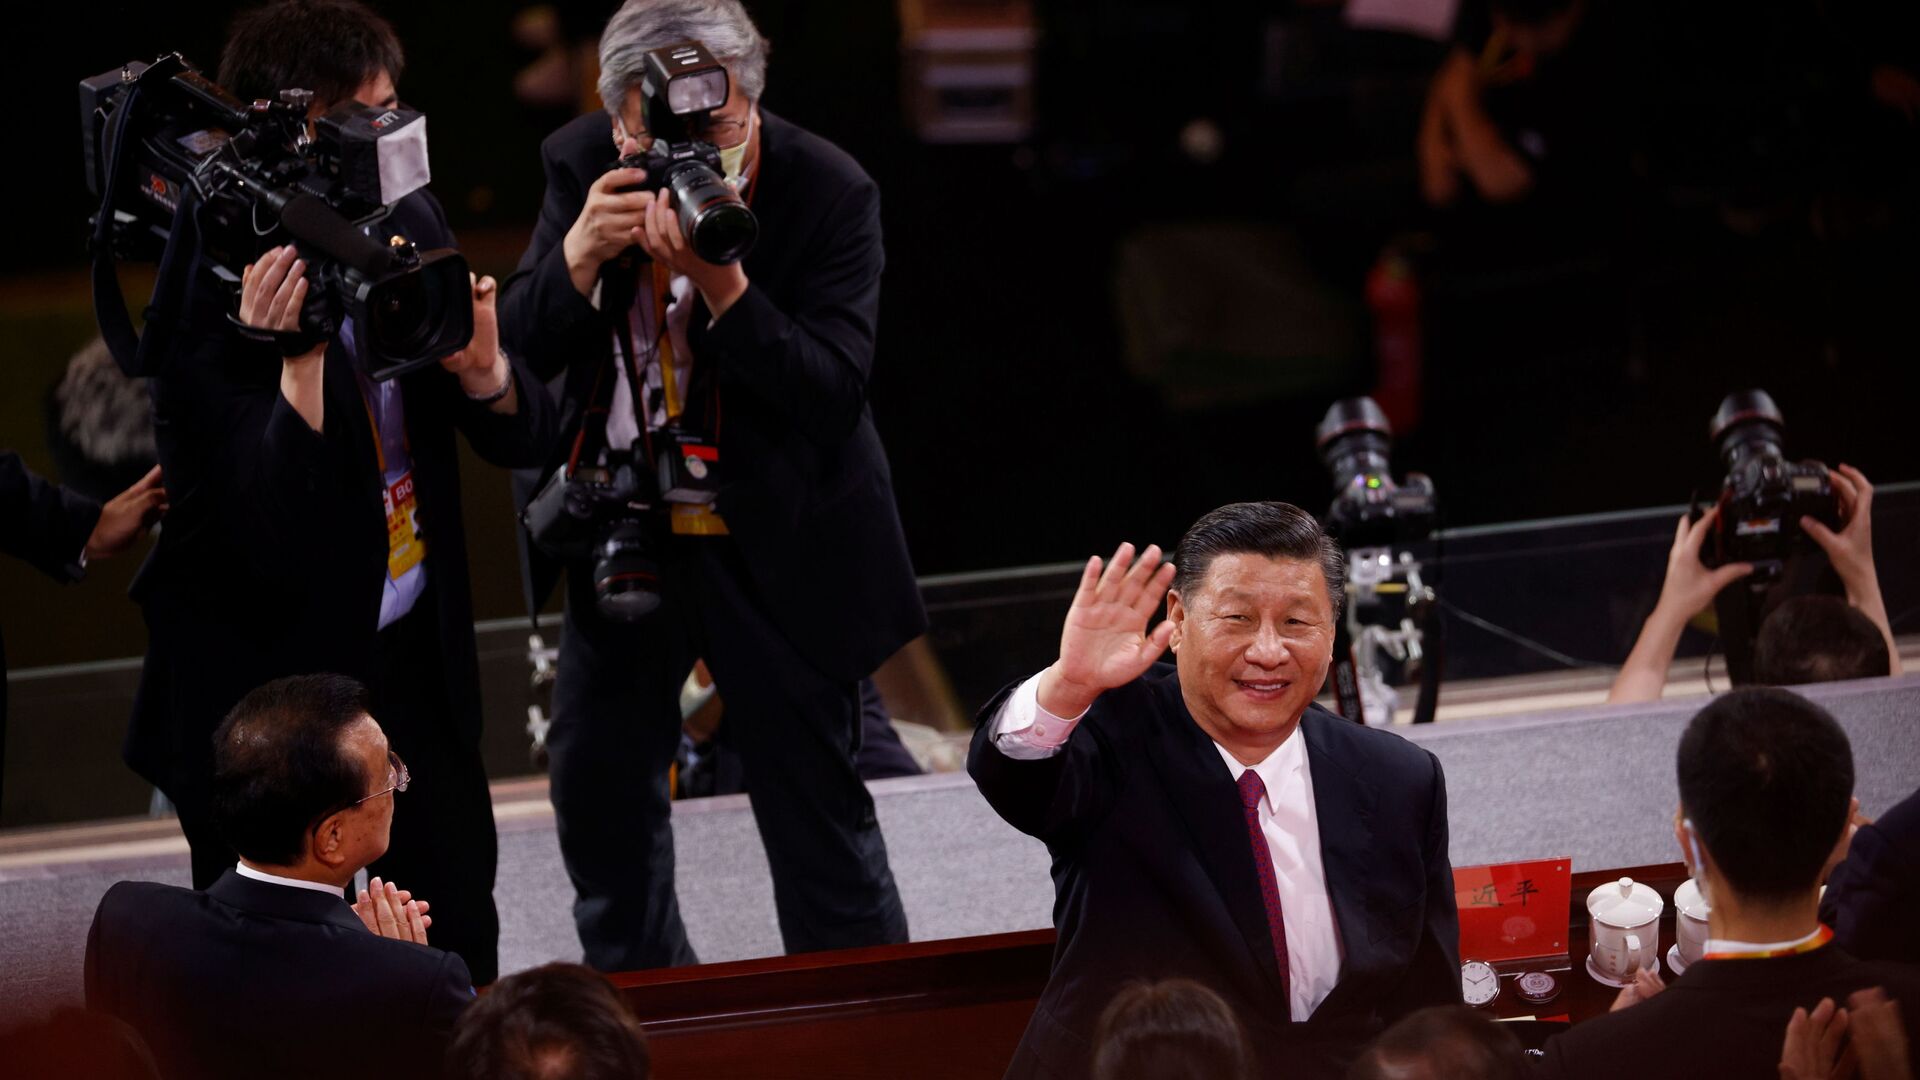 الرئيس الصيني شي جين بينغ يحي الجمهور بعد انتهاء حفل بمناسبة الذكرى المئوية لتأسيس الحزب الشيوعي الصيني في بكين، الصين 28 يونيو 2021 - سبوتنيك عربي, 1920, 26.10.2021